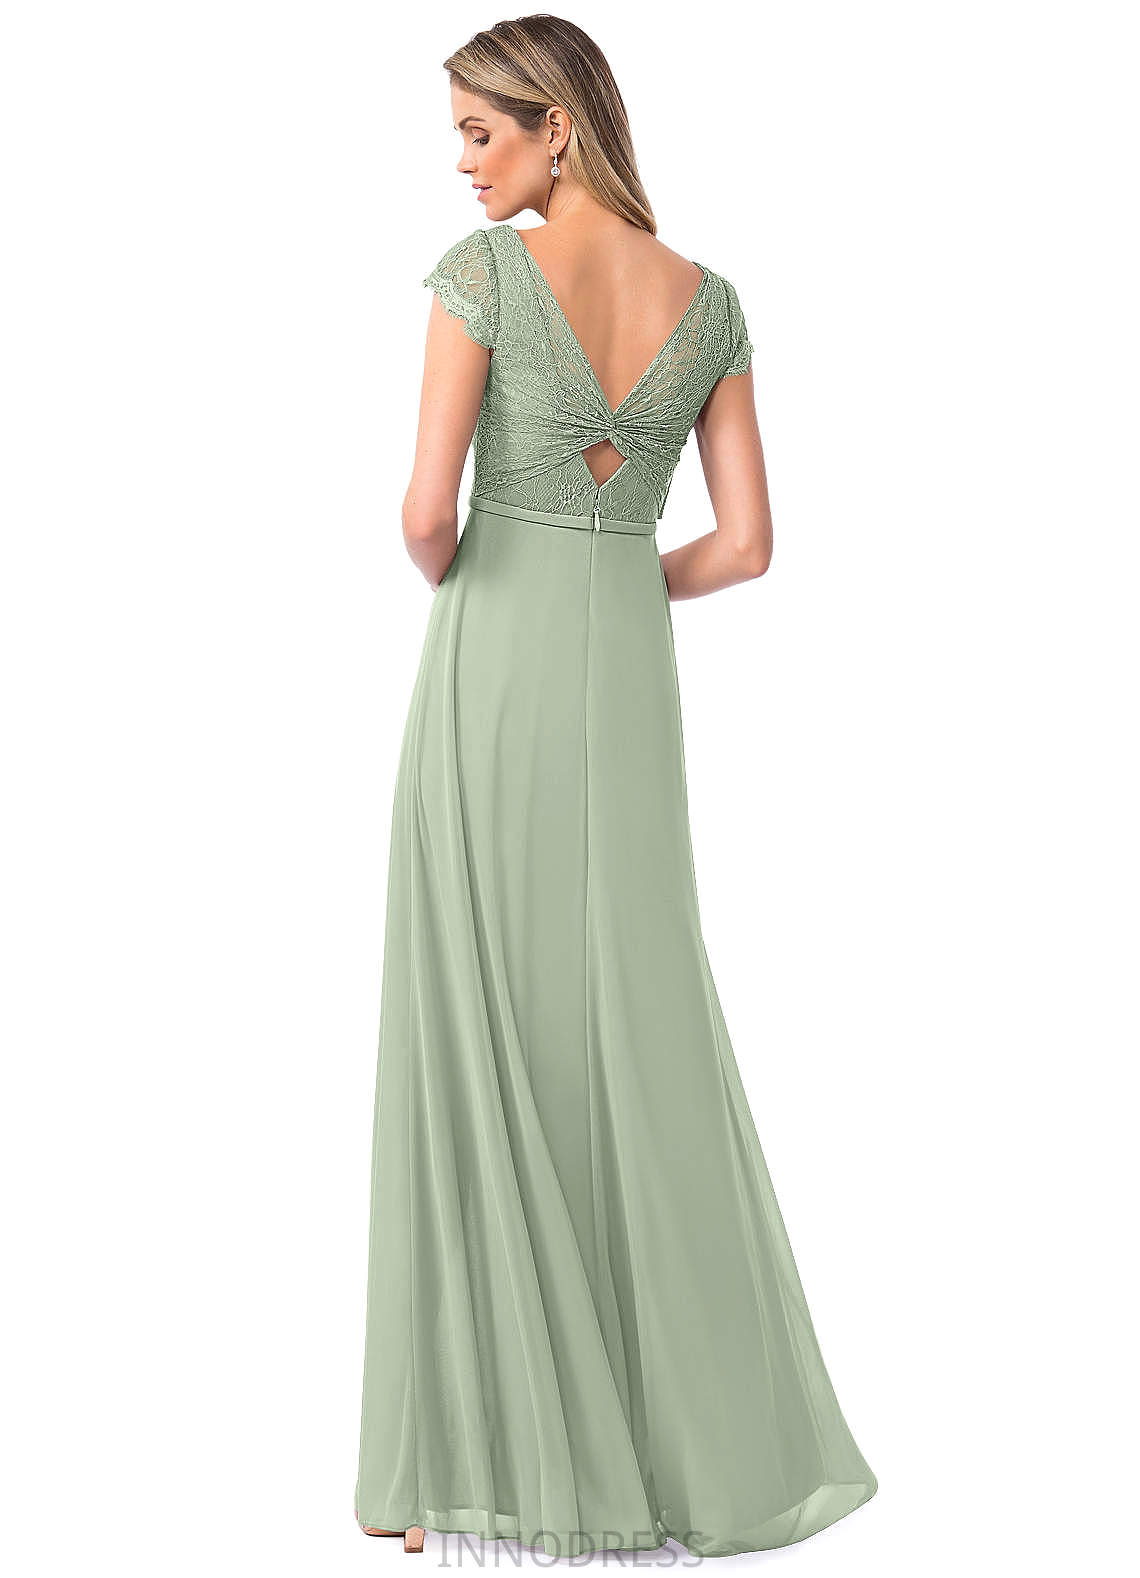 Trudie V-Neck Natural Waist A-Line/Princess Sleeveless Floor Length Bridesmaid Dresses